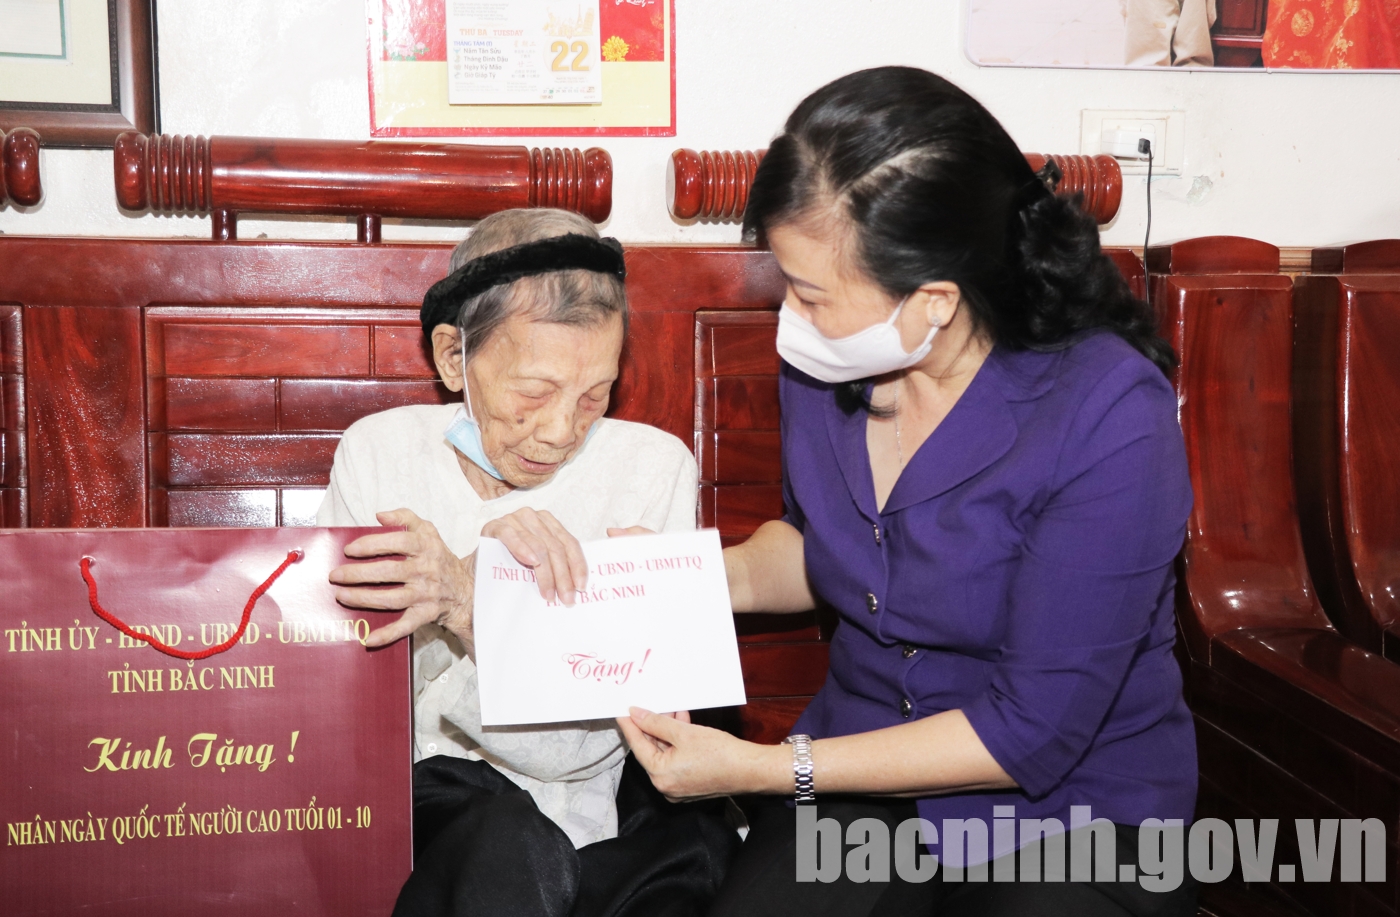 Bí thư Tỉnh ủy Đào Hồng Lan thăm, tặng quà người cao tuổi tại thành phố Bắc Ninh